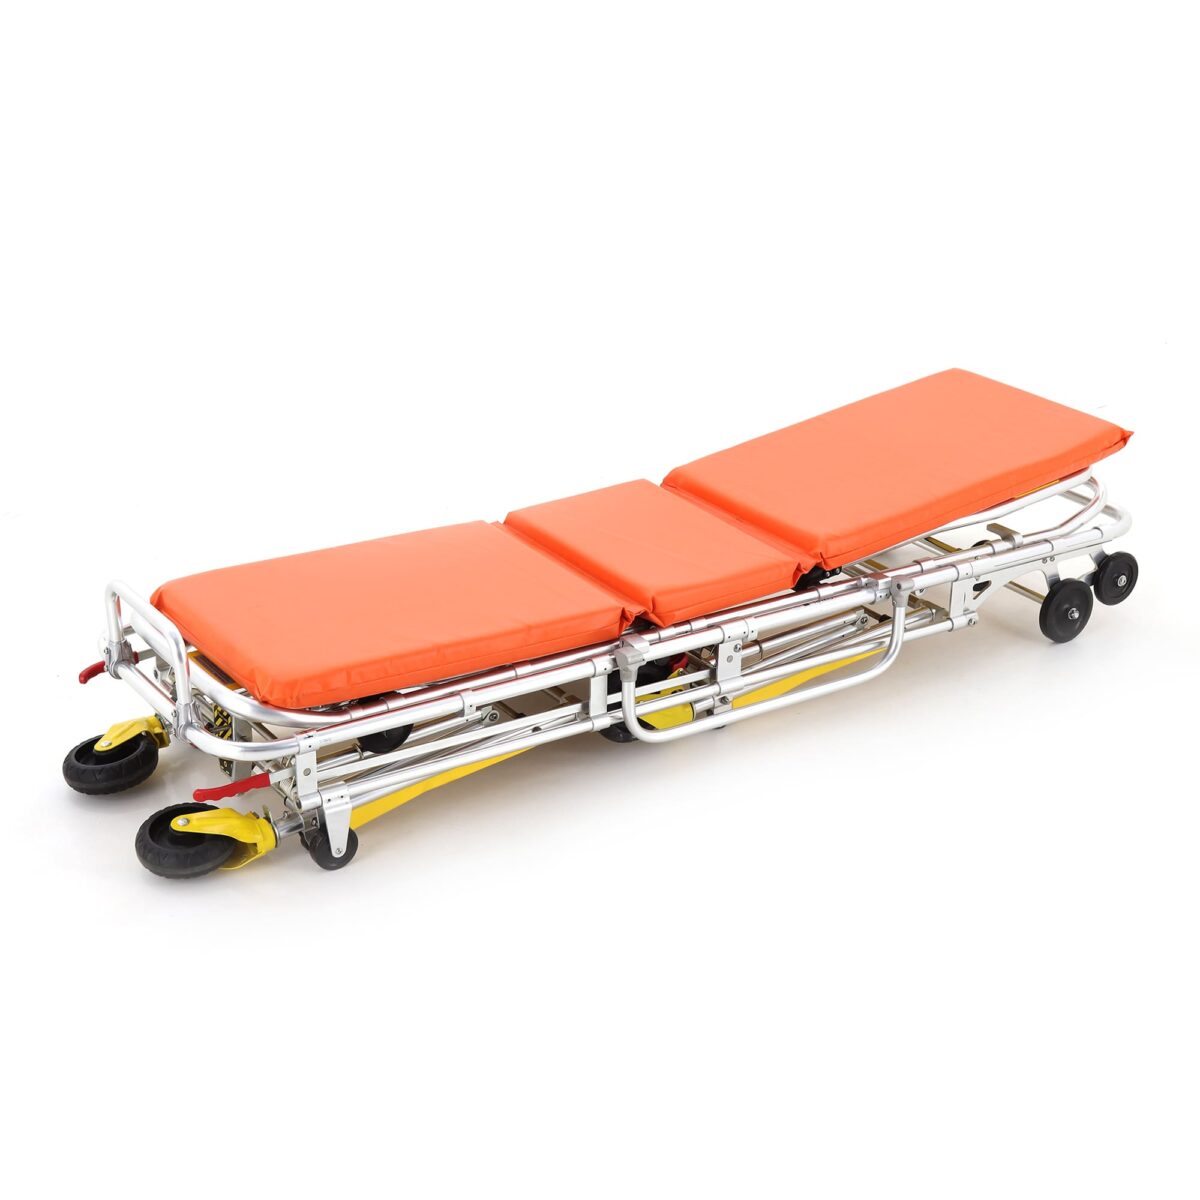 Изображение Каталка для автомобилей скорой медицинской помощи Med-Mos YDC-3A со съемными носилками